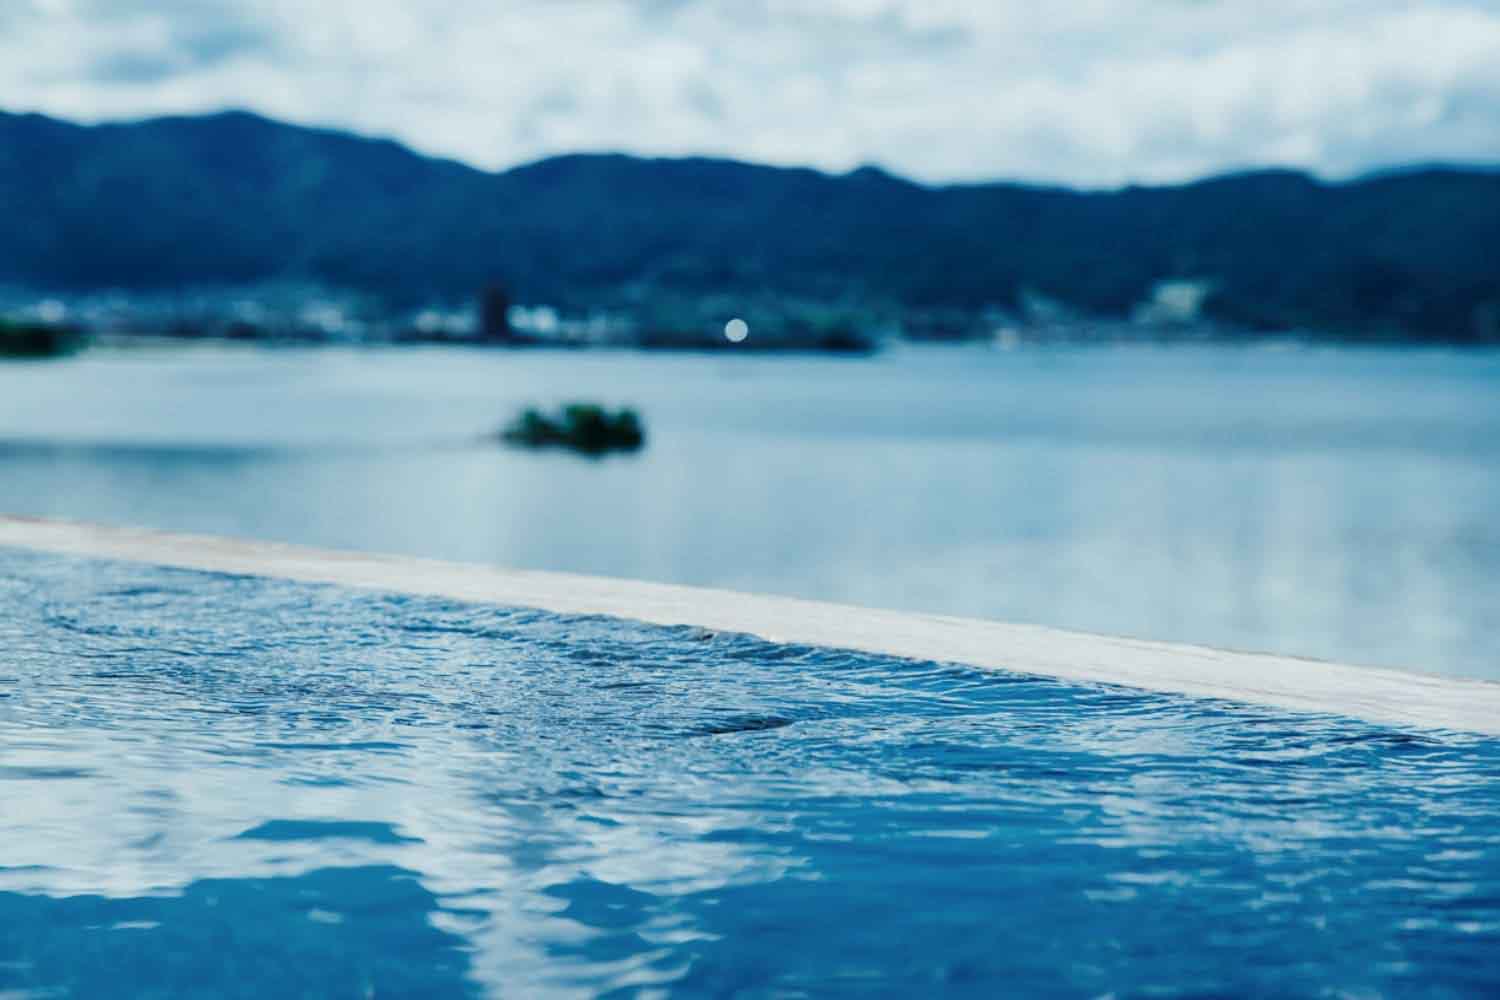 諏訪湖を一望する展望露天風呂